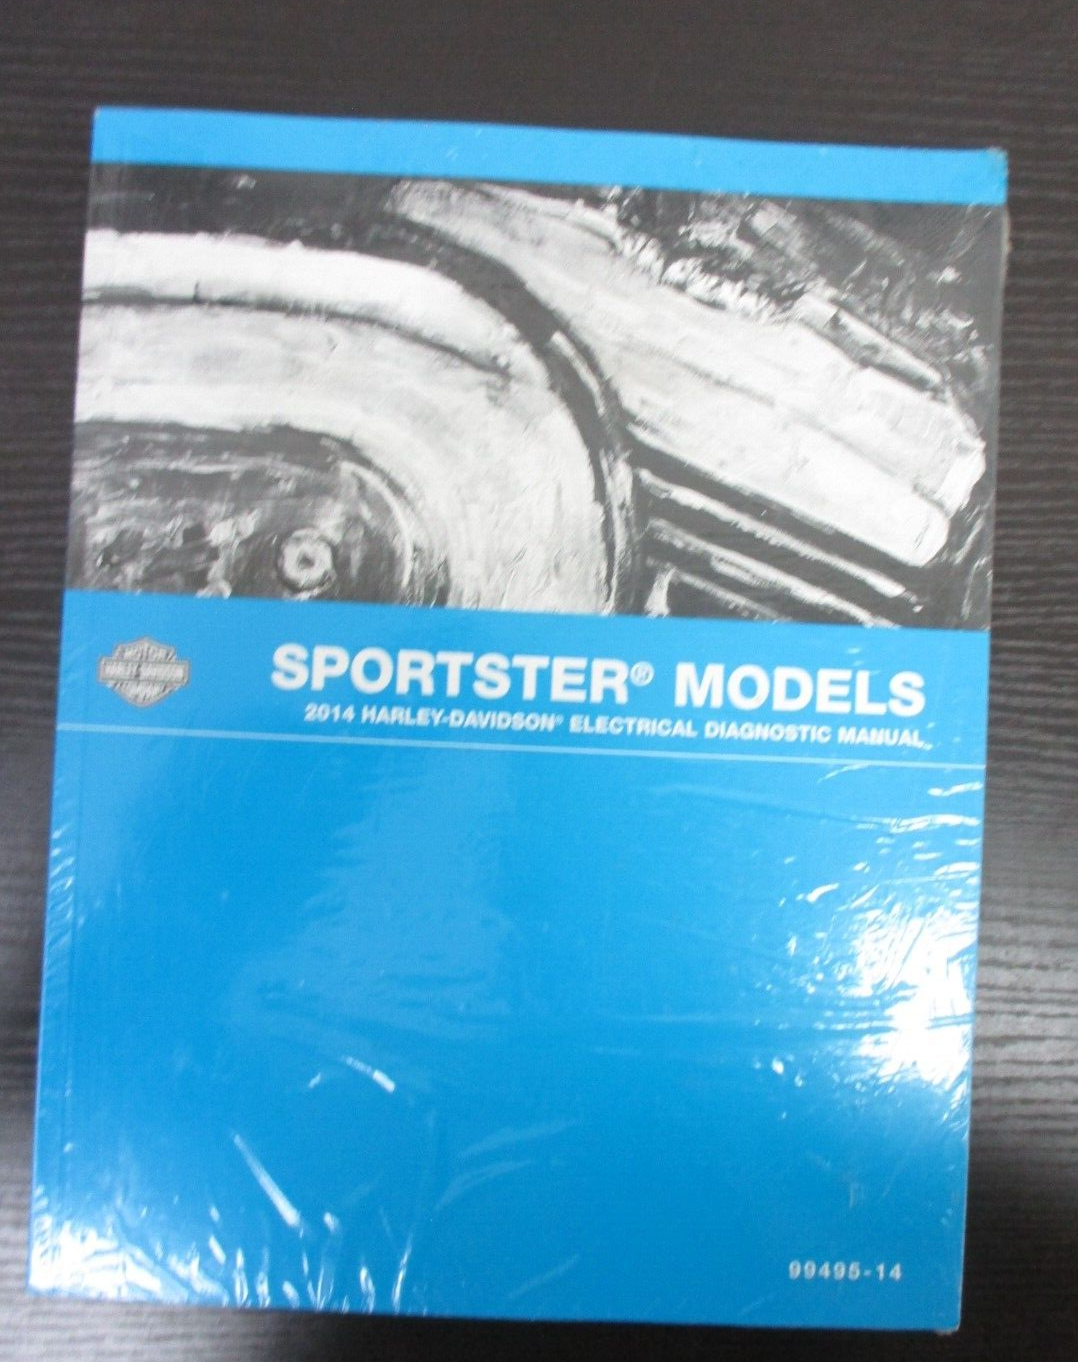 Harley-Davidson Sportster Models 2014 Electrical Diagnostic Manual  99495-14